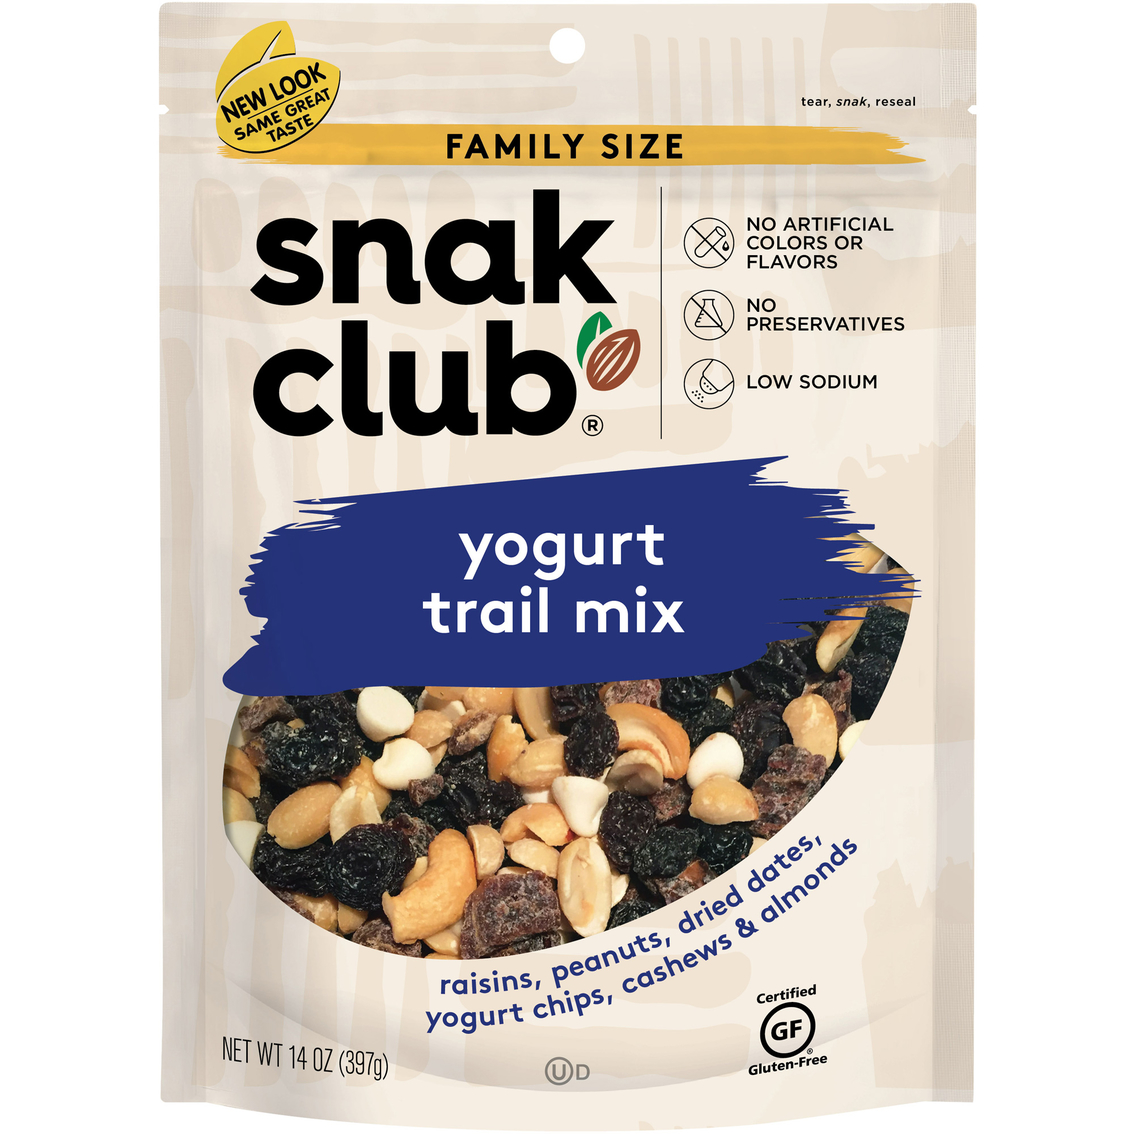 SnakClub Yogurt Nut Mix Family Size 14 oz.